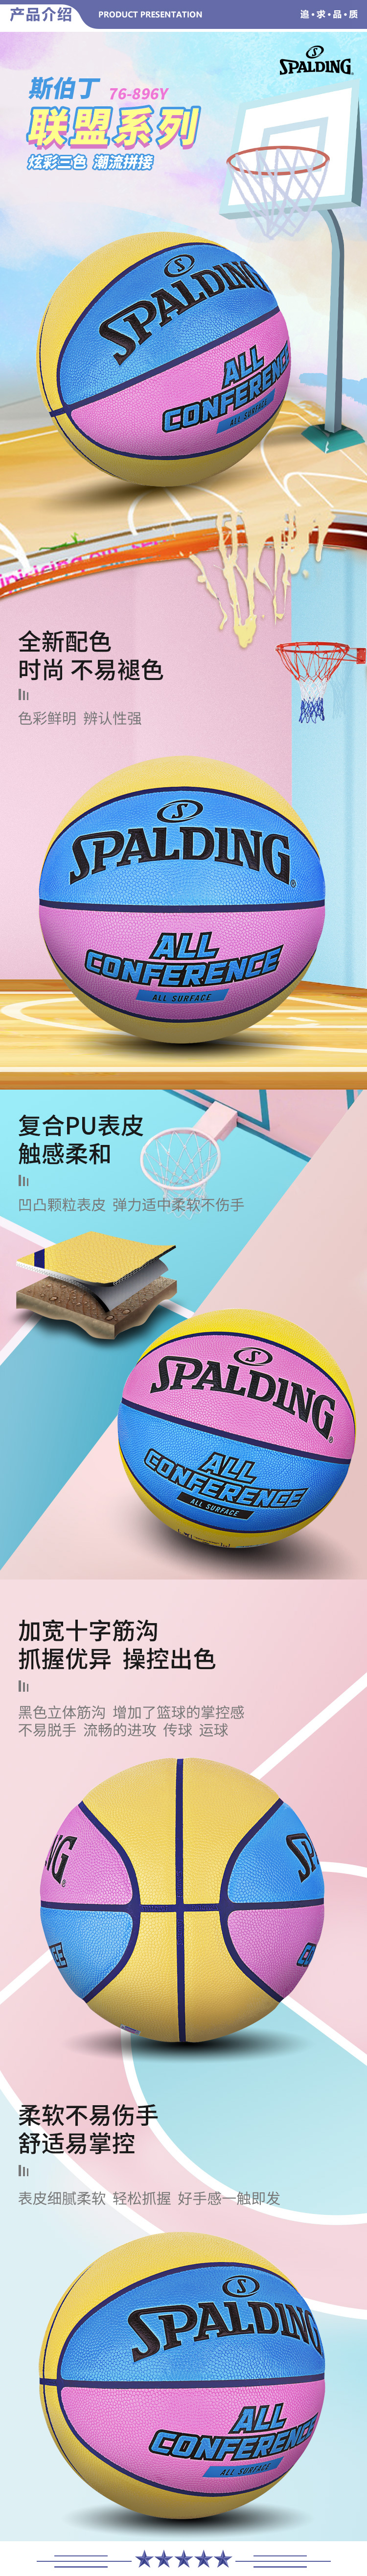 斯伯丁 76-896Y Spalding7号标准篮球联盟花色篮球7号PU材质黄蓝粉 2.jpg